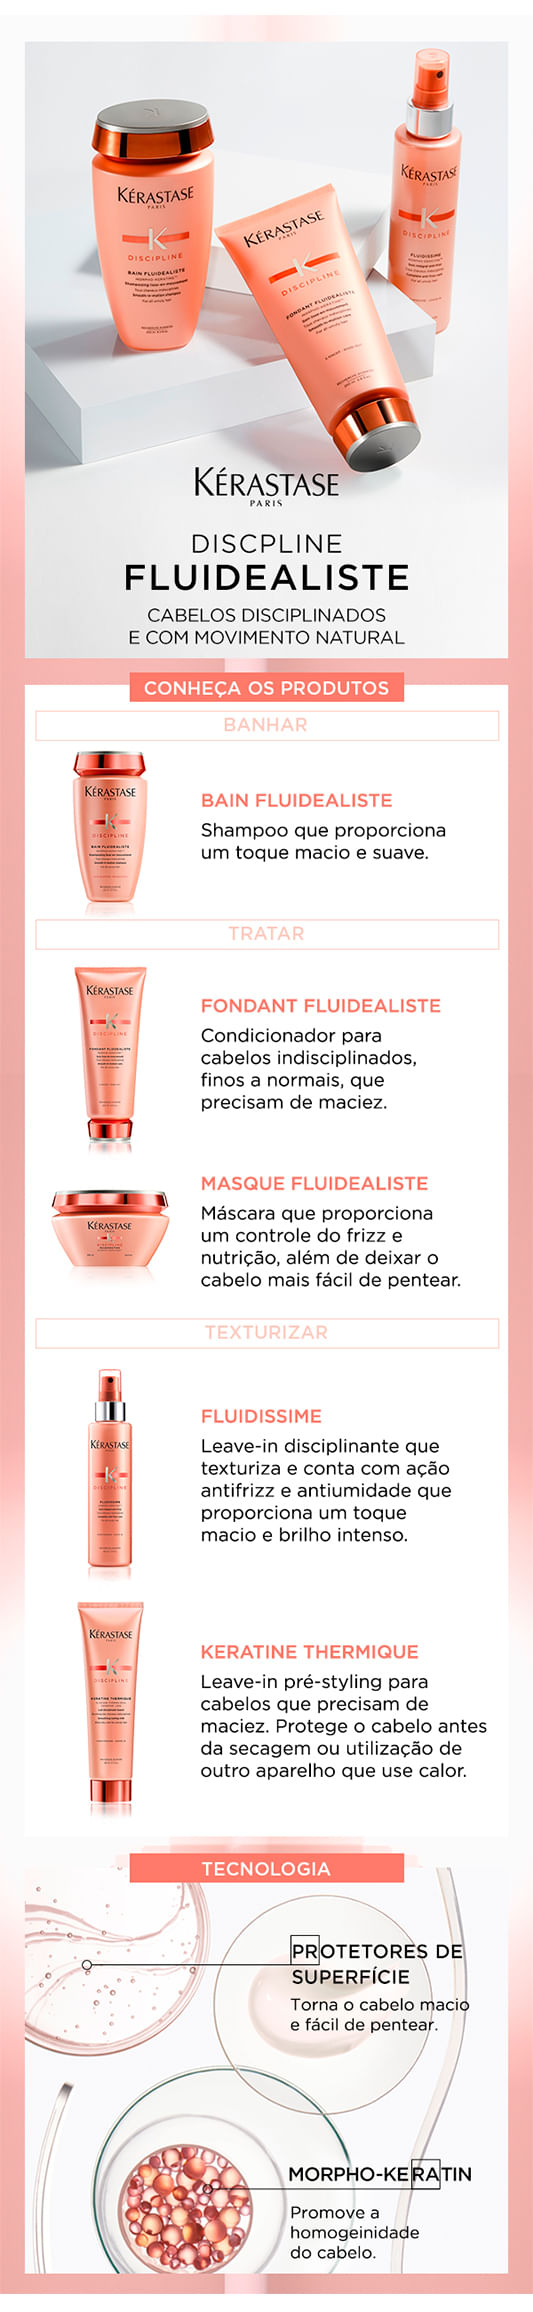 Kérastase Discipline Fluidealiste Kit - Shampoo + Condicionador + Máscara